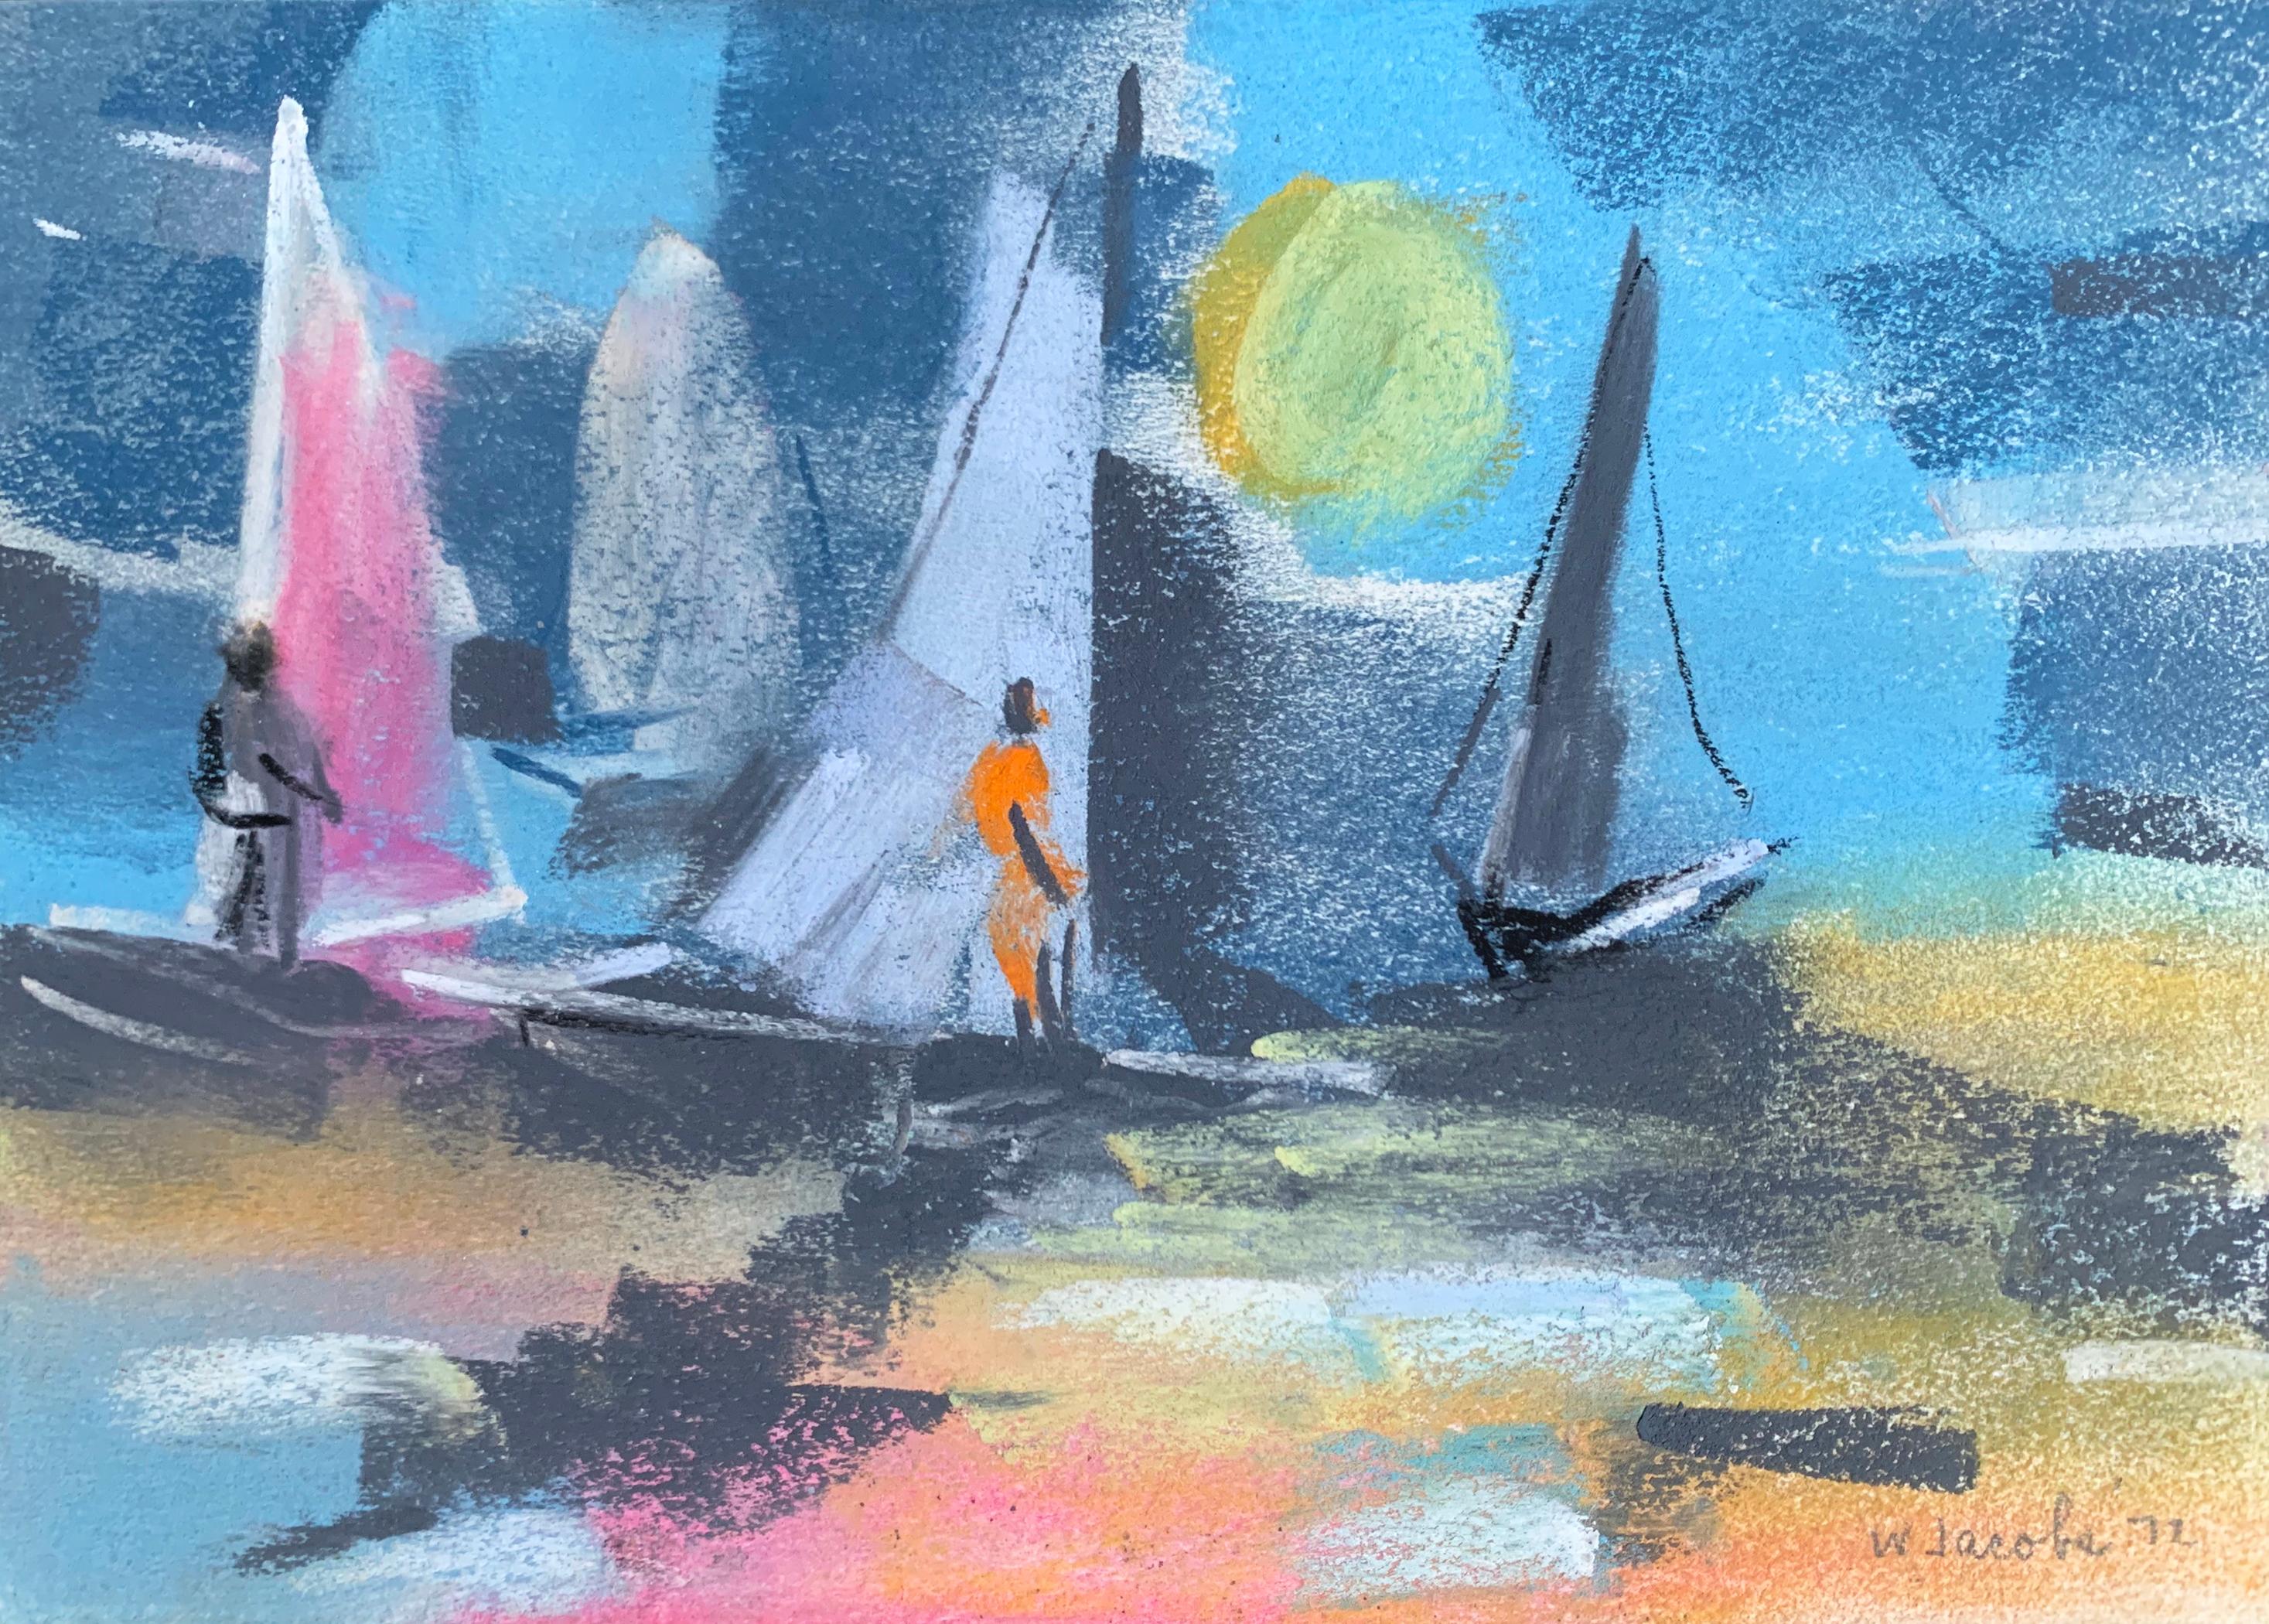 "Windsurfing at Sunset" du célèbre peintre de Chicago William Jacobs (1897 - 1973) est un pastel sur papier créé en 1970. L'œuvre est signée et datée au crayon par l'artiste et n'a jamais été encadrée.

Né à Chicago, William Jacobs a étudié à l'Art